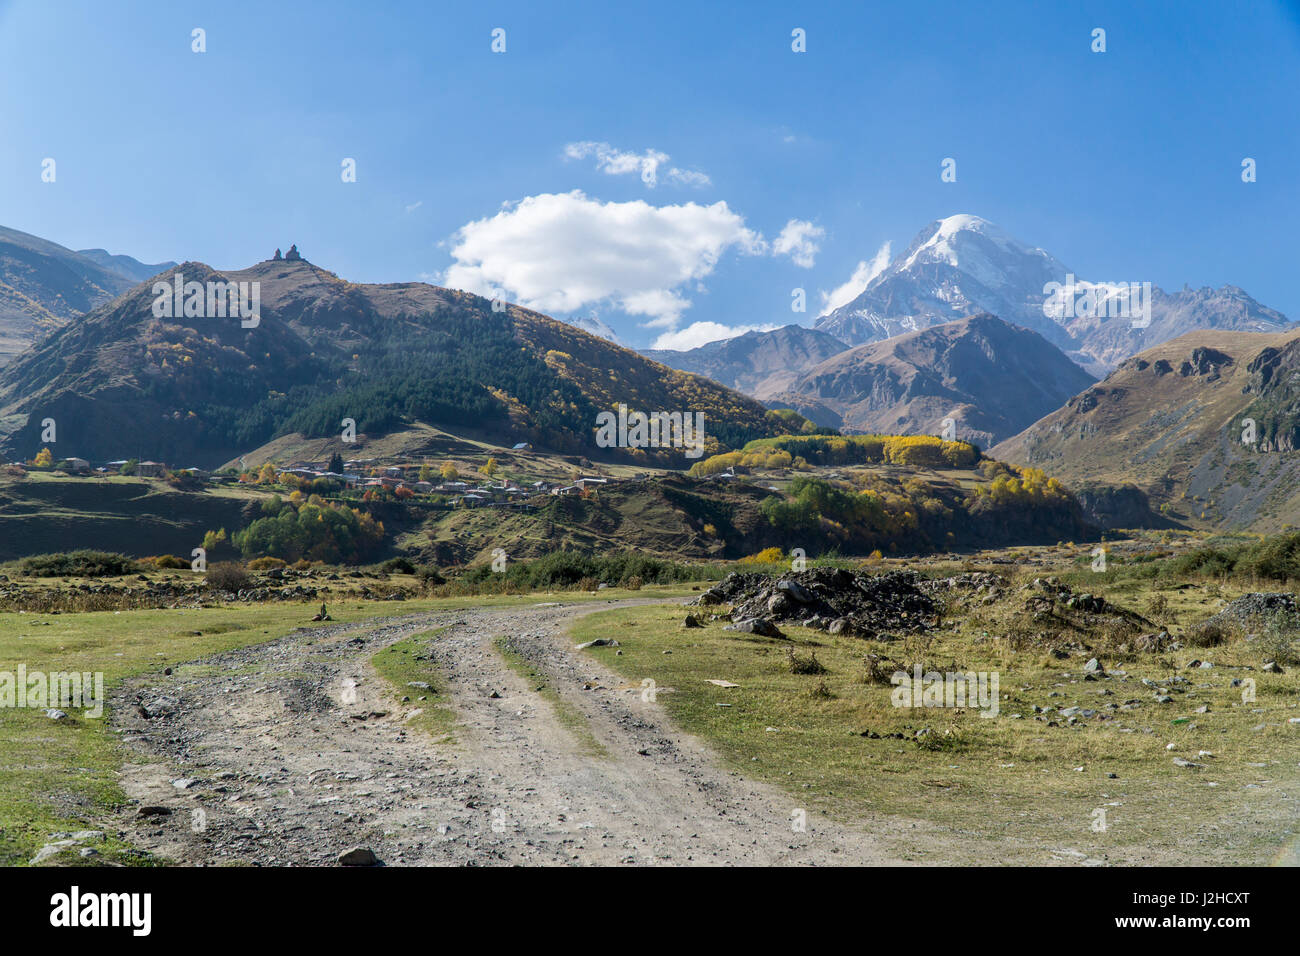 Le mont Kazbek, vue de ville Stepantsminda en Géorgie. C'est l'une des principales montagnes du Caucase. Septembre Banque D'Images